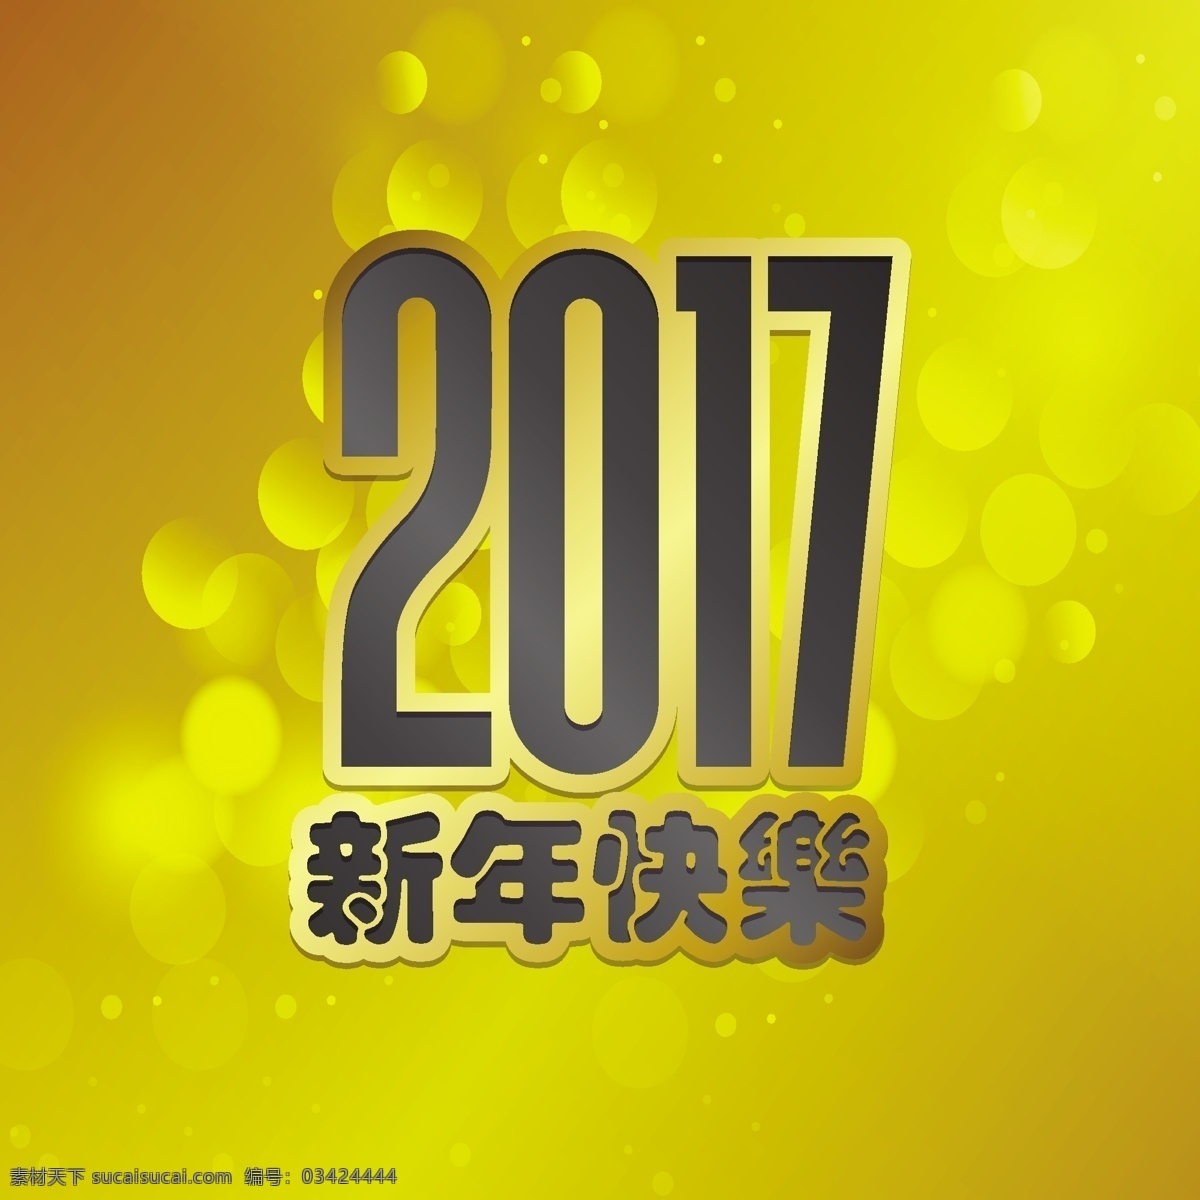 中国 新年 黄色 背景 冬天 新的一年 2017 人 动物 庆祝 快乐 节日 事件 的背景下 公鸡 十二月 泡沫 东方 年 亚洲